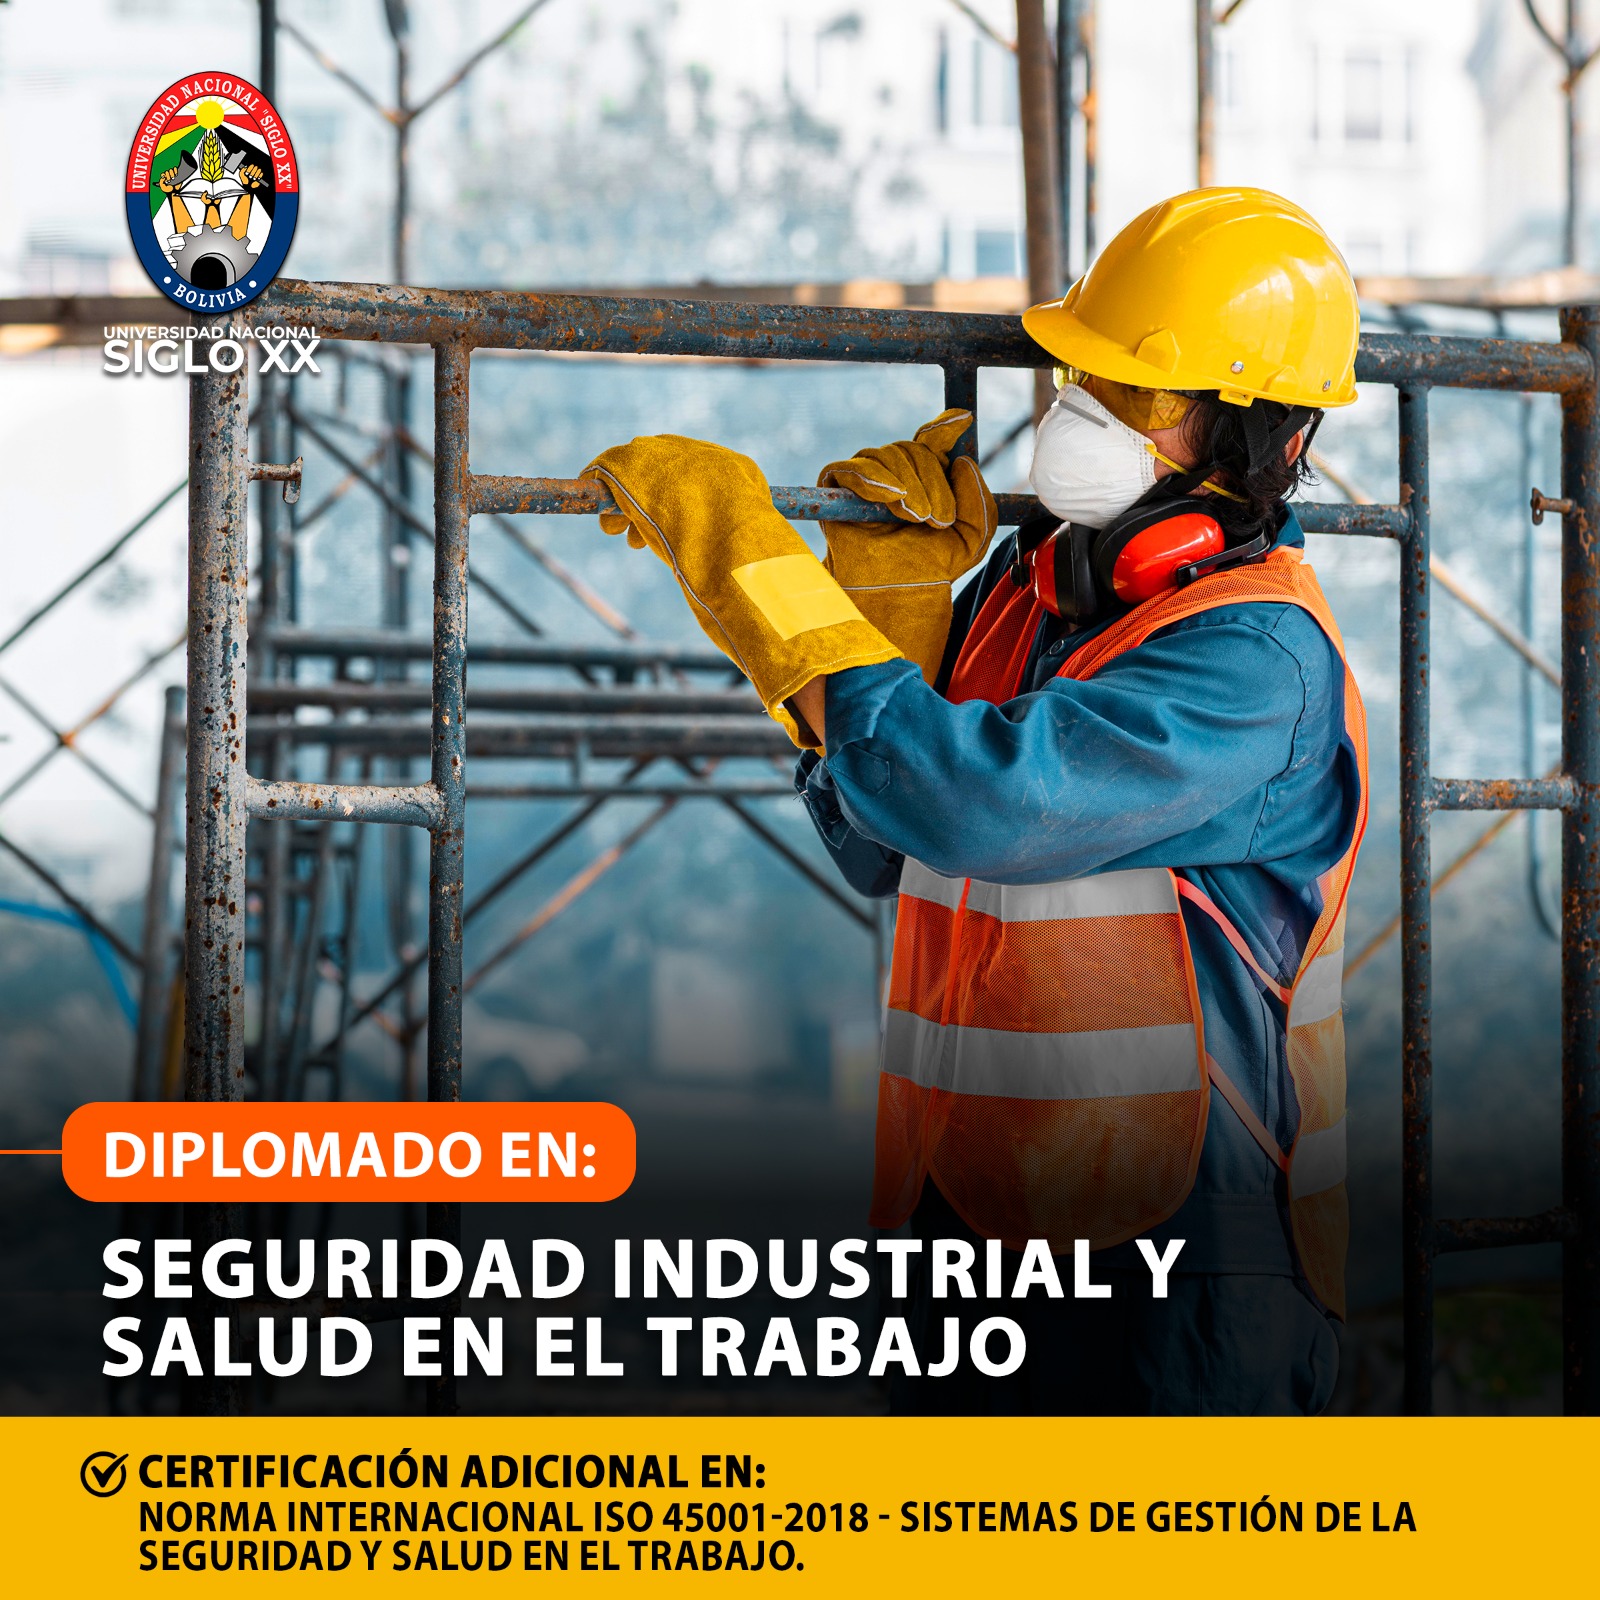 Diplomado En Seguridad Industrial Y Salud En El Trabajo